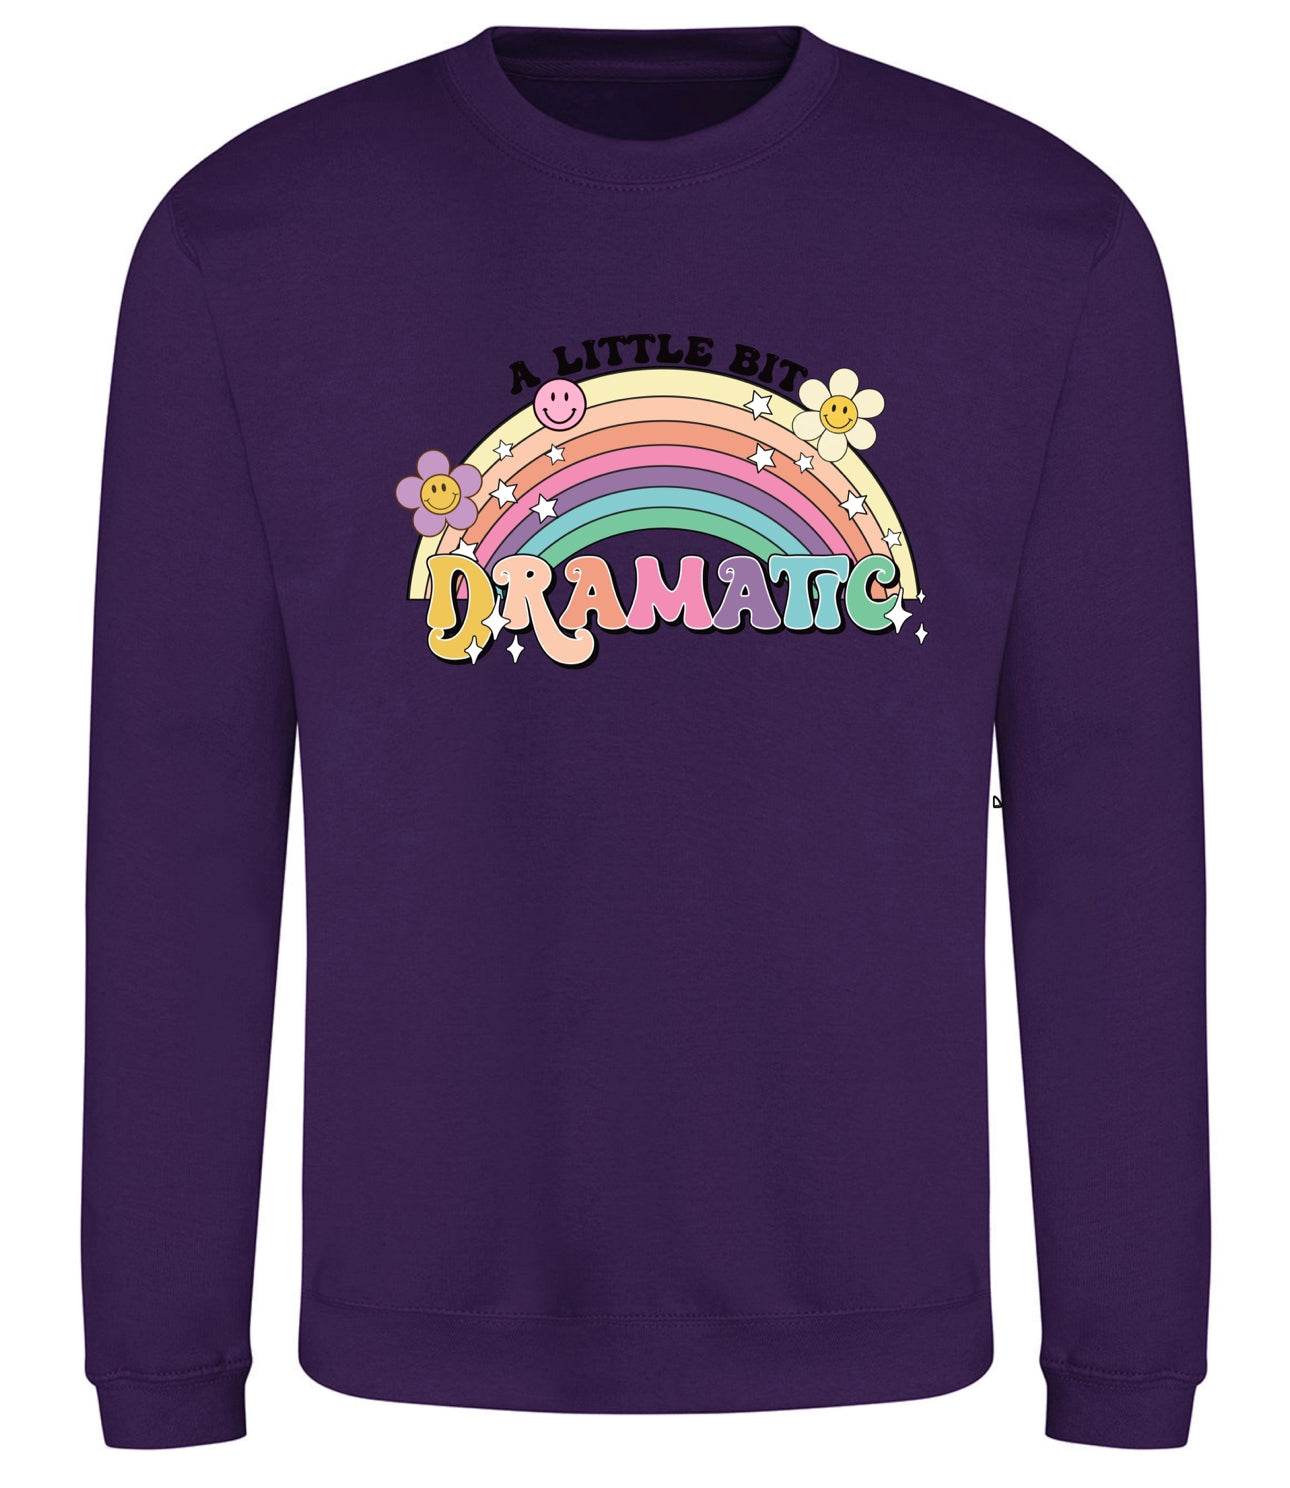 Purple "A Little Dramatic" Sweatshirt